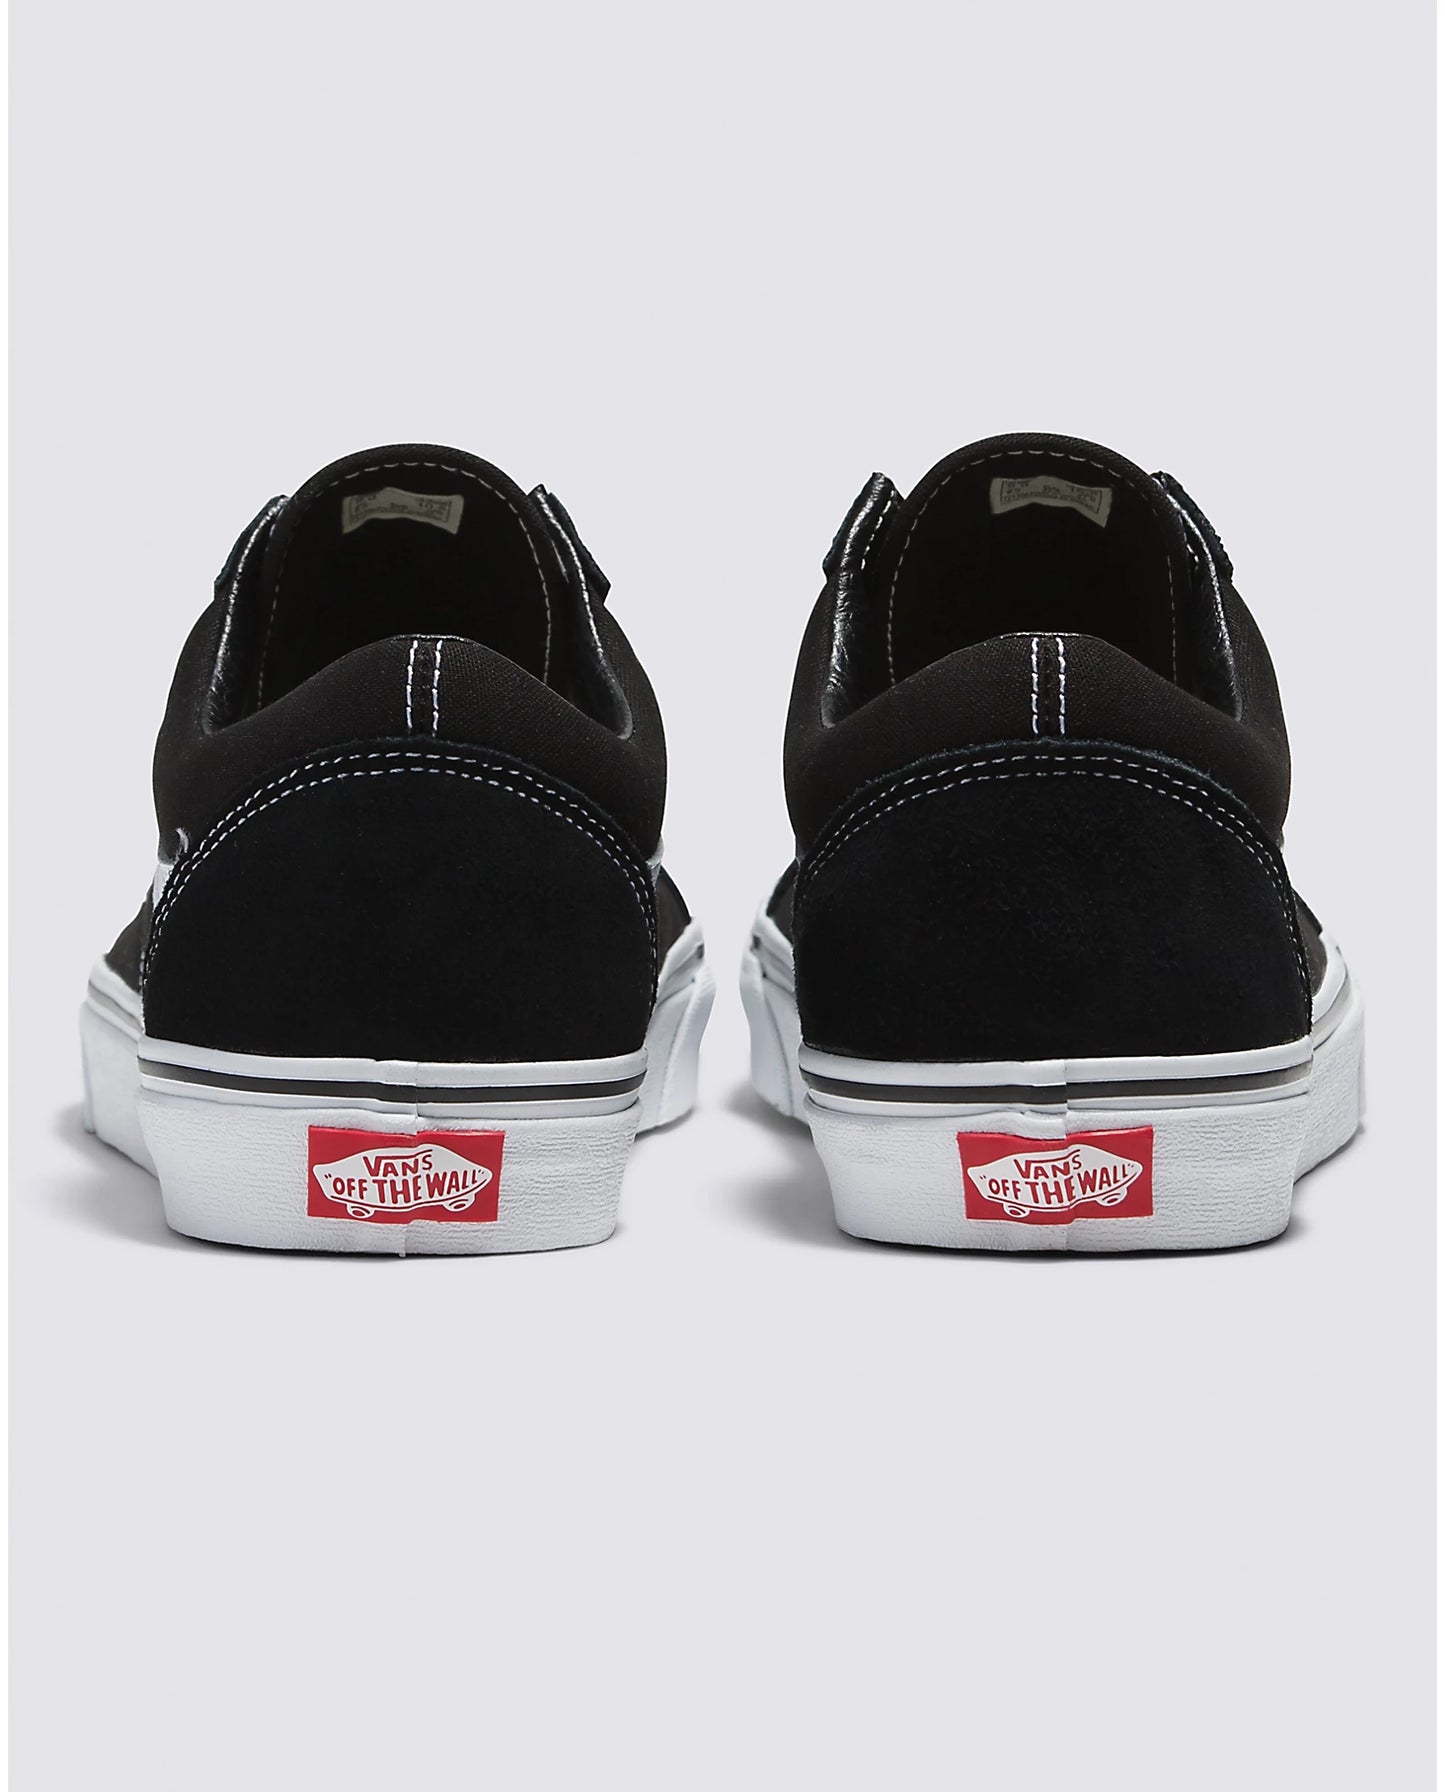 Vans Women's Old Skool Sneakers - Black/White